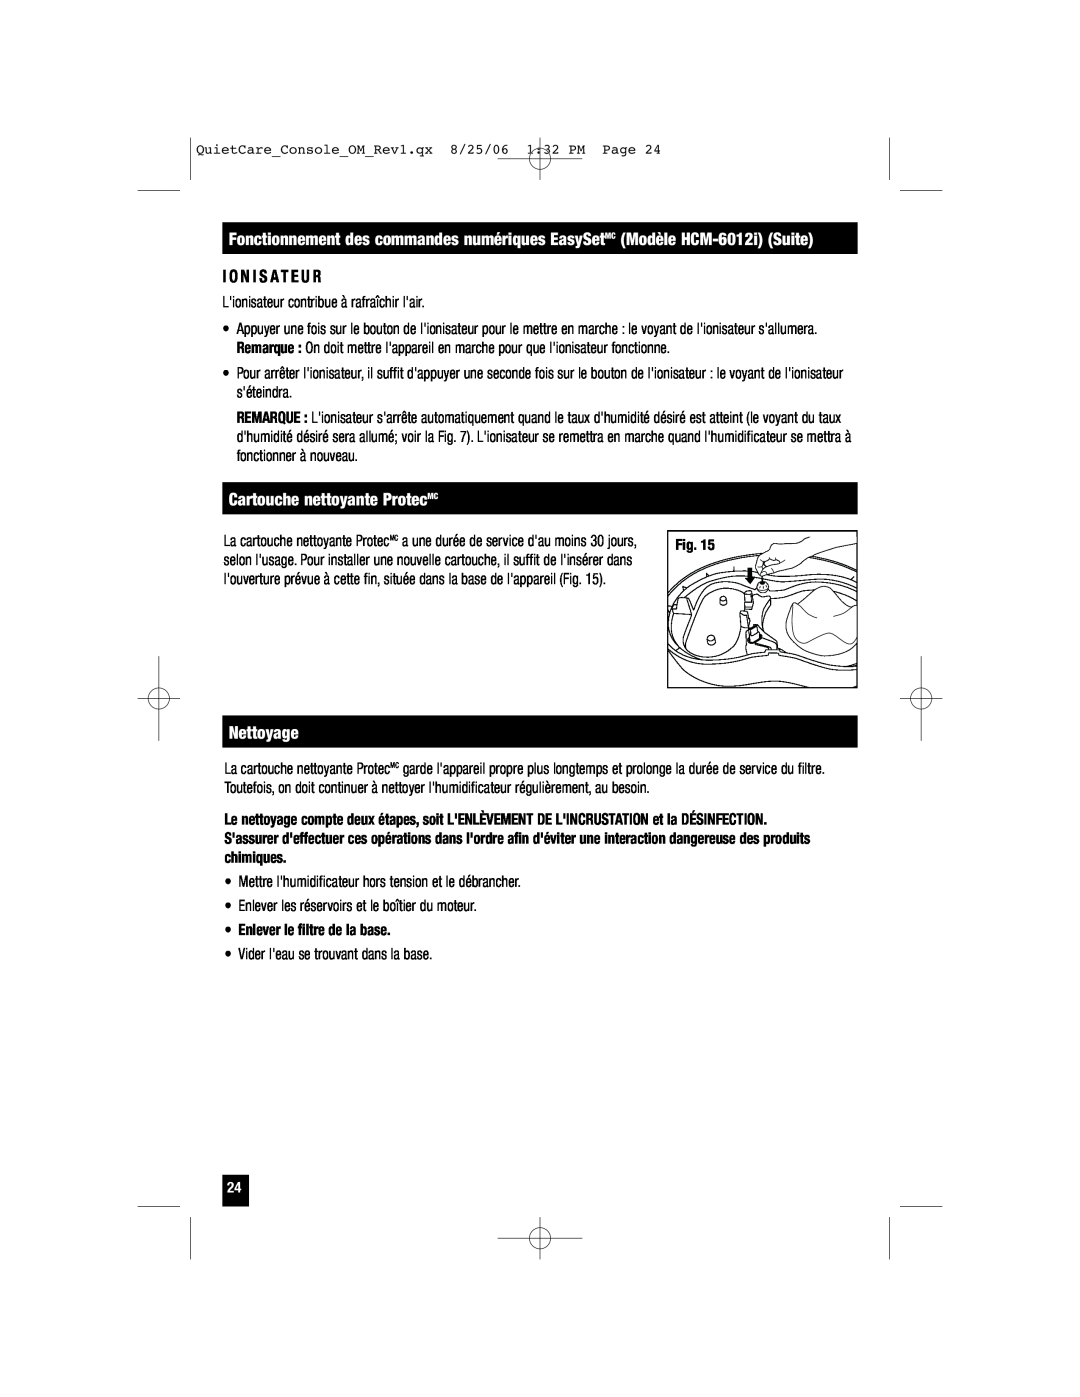 Honeywell HCM-6009 owner manual I O N I S A T E U R, Cartouche nettoyante ProtecMC, Nettoyage 